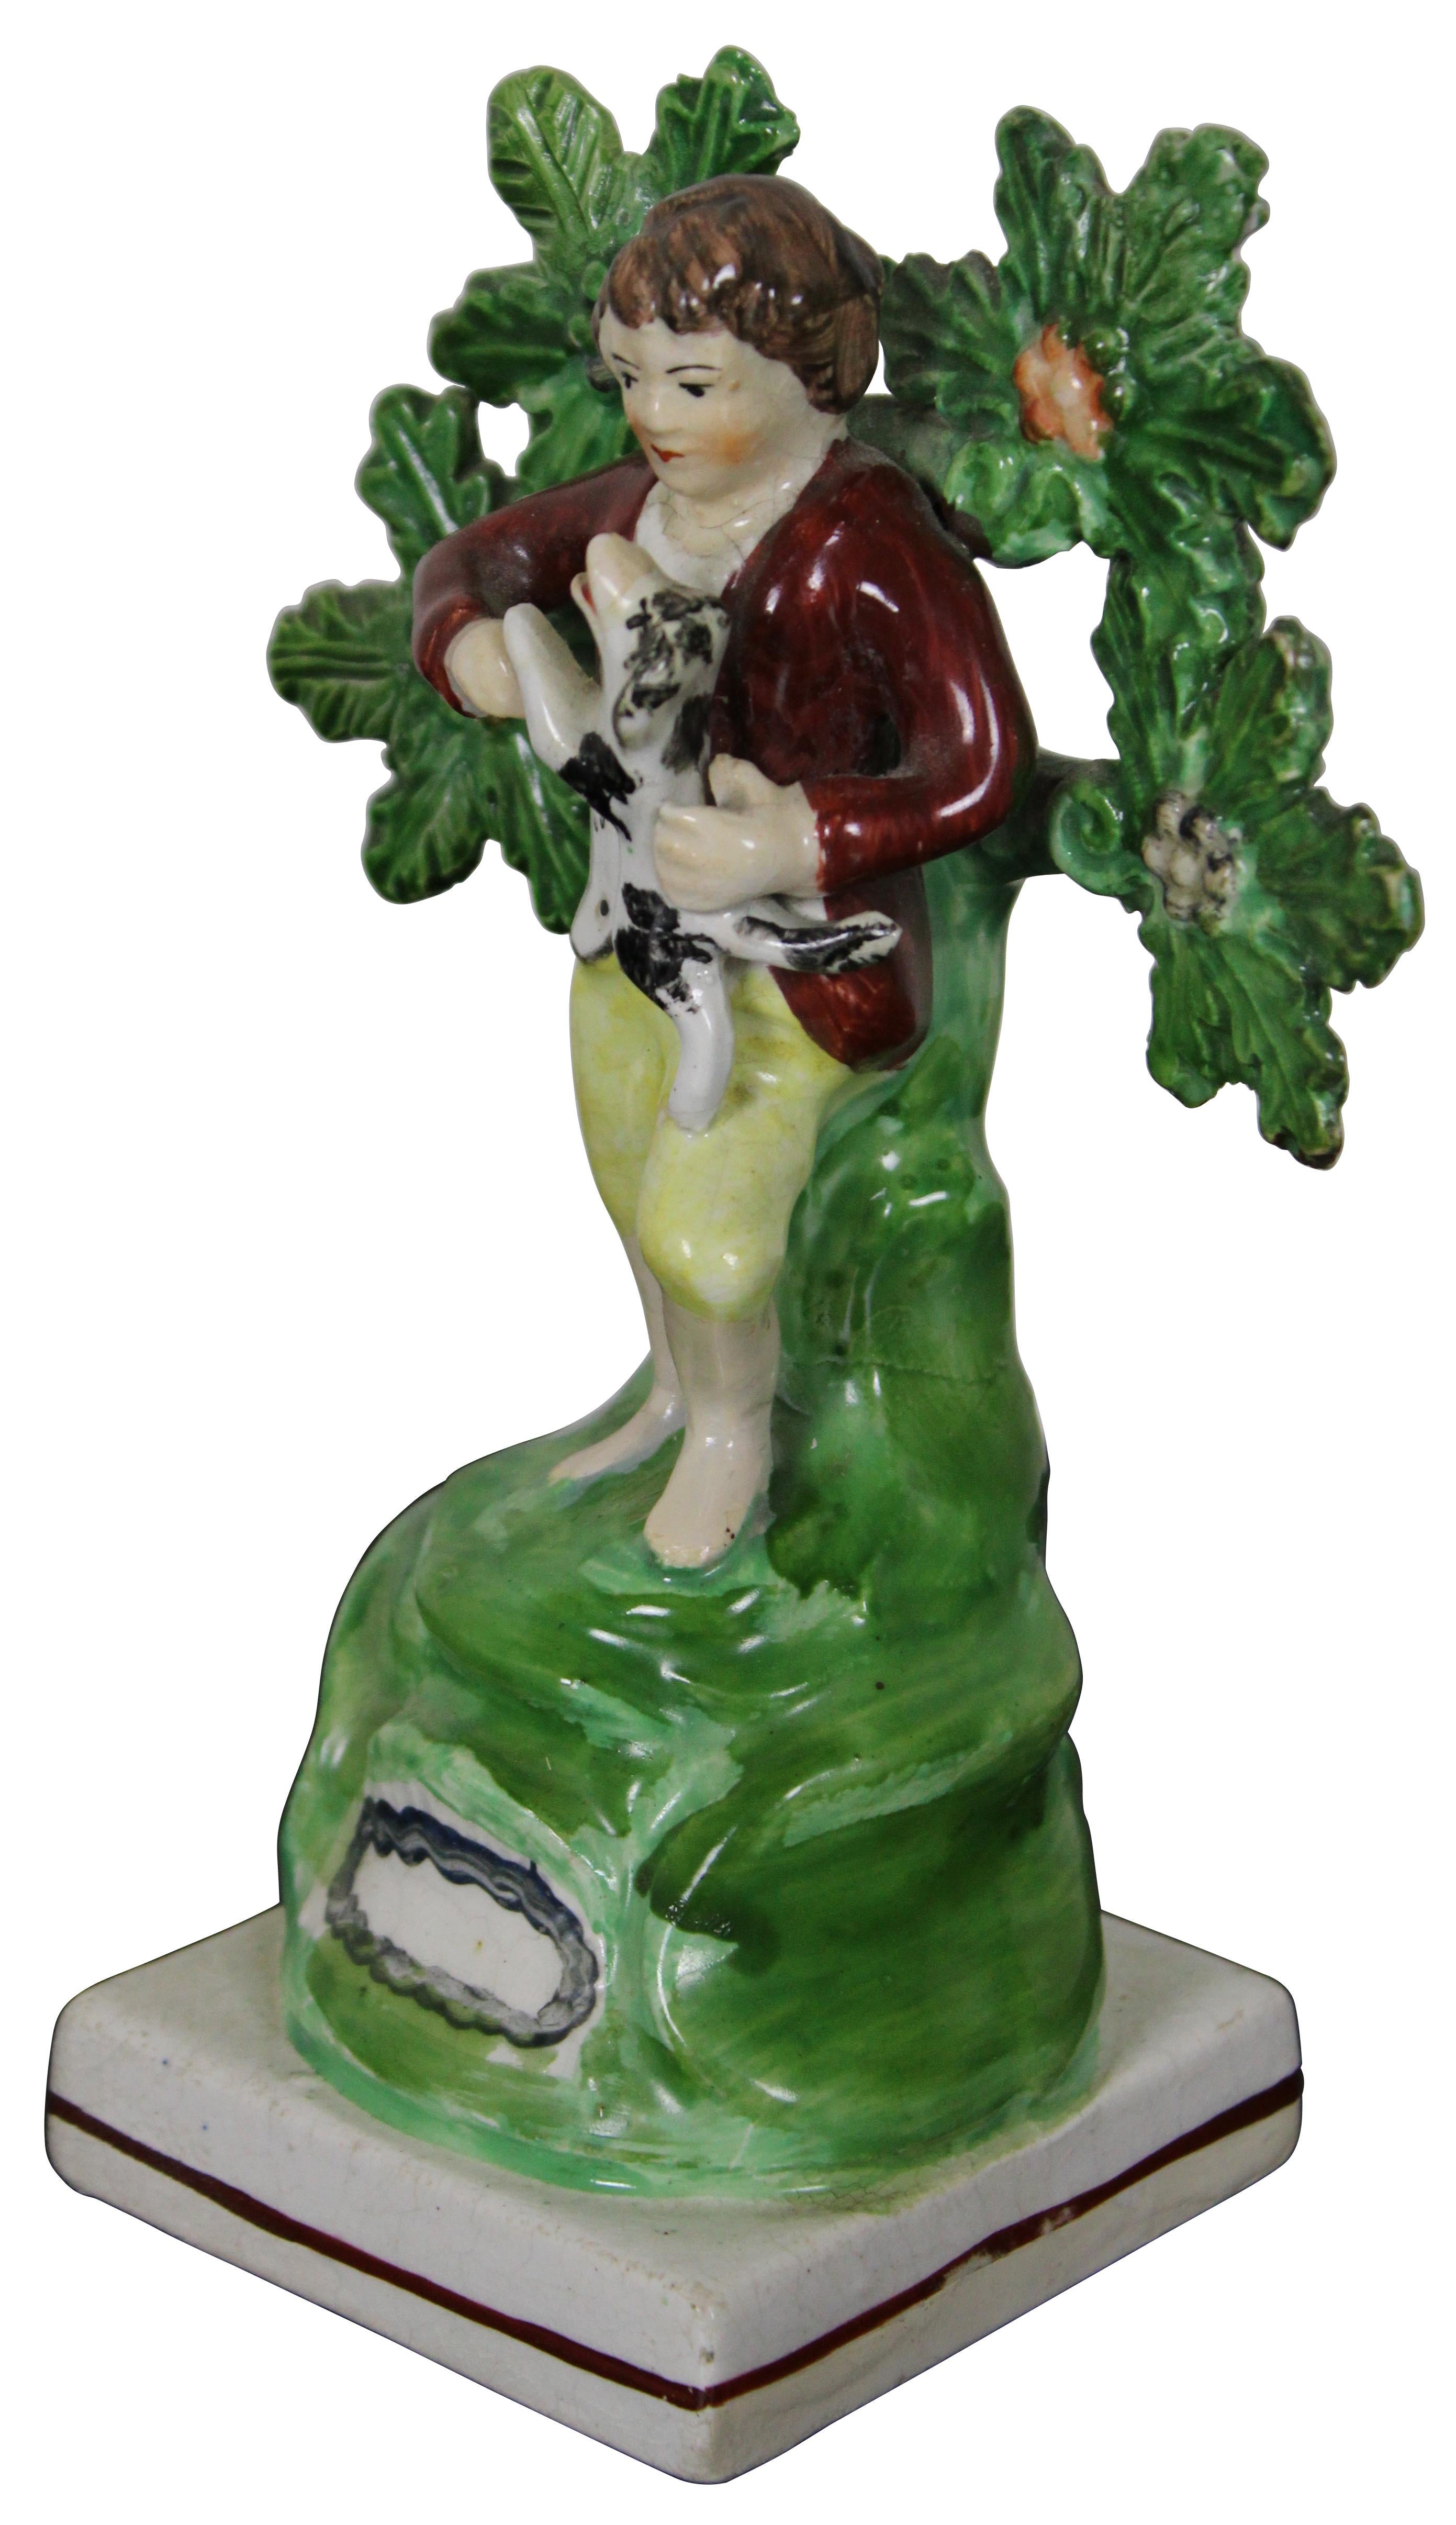 Ancienne figurine victorienne en porcelaine Bocage de Staffordshire en perles de Staffordshire en forme de jeune garçon debout devant un arbre ou un arbuste, tenant un petit chien. Mesure : 5,5